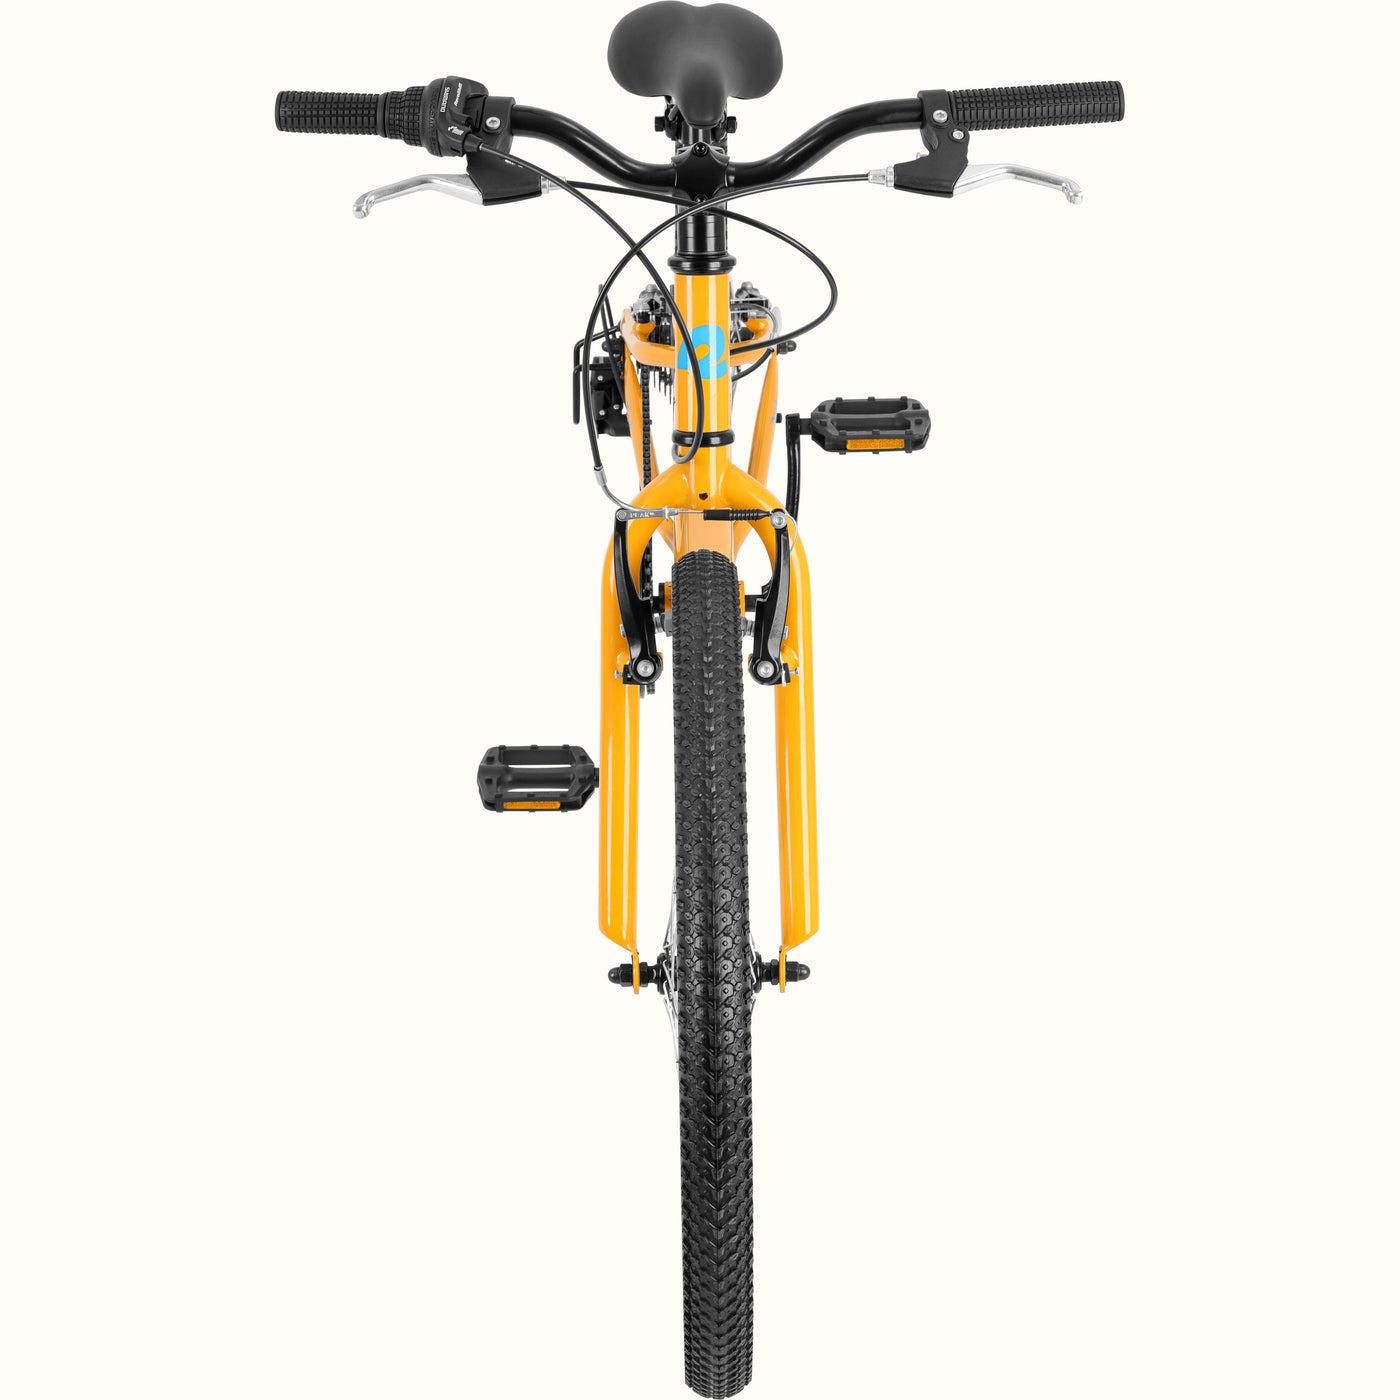 Dart 24” Kids’ Bike 7-Speed (8-11 years) | Saffron